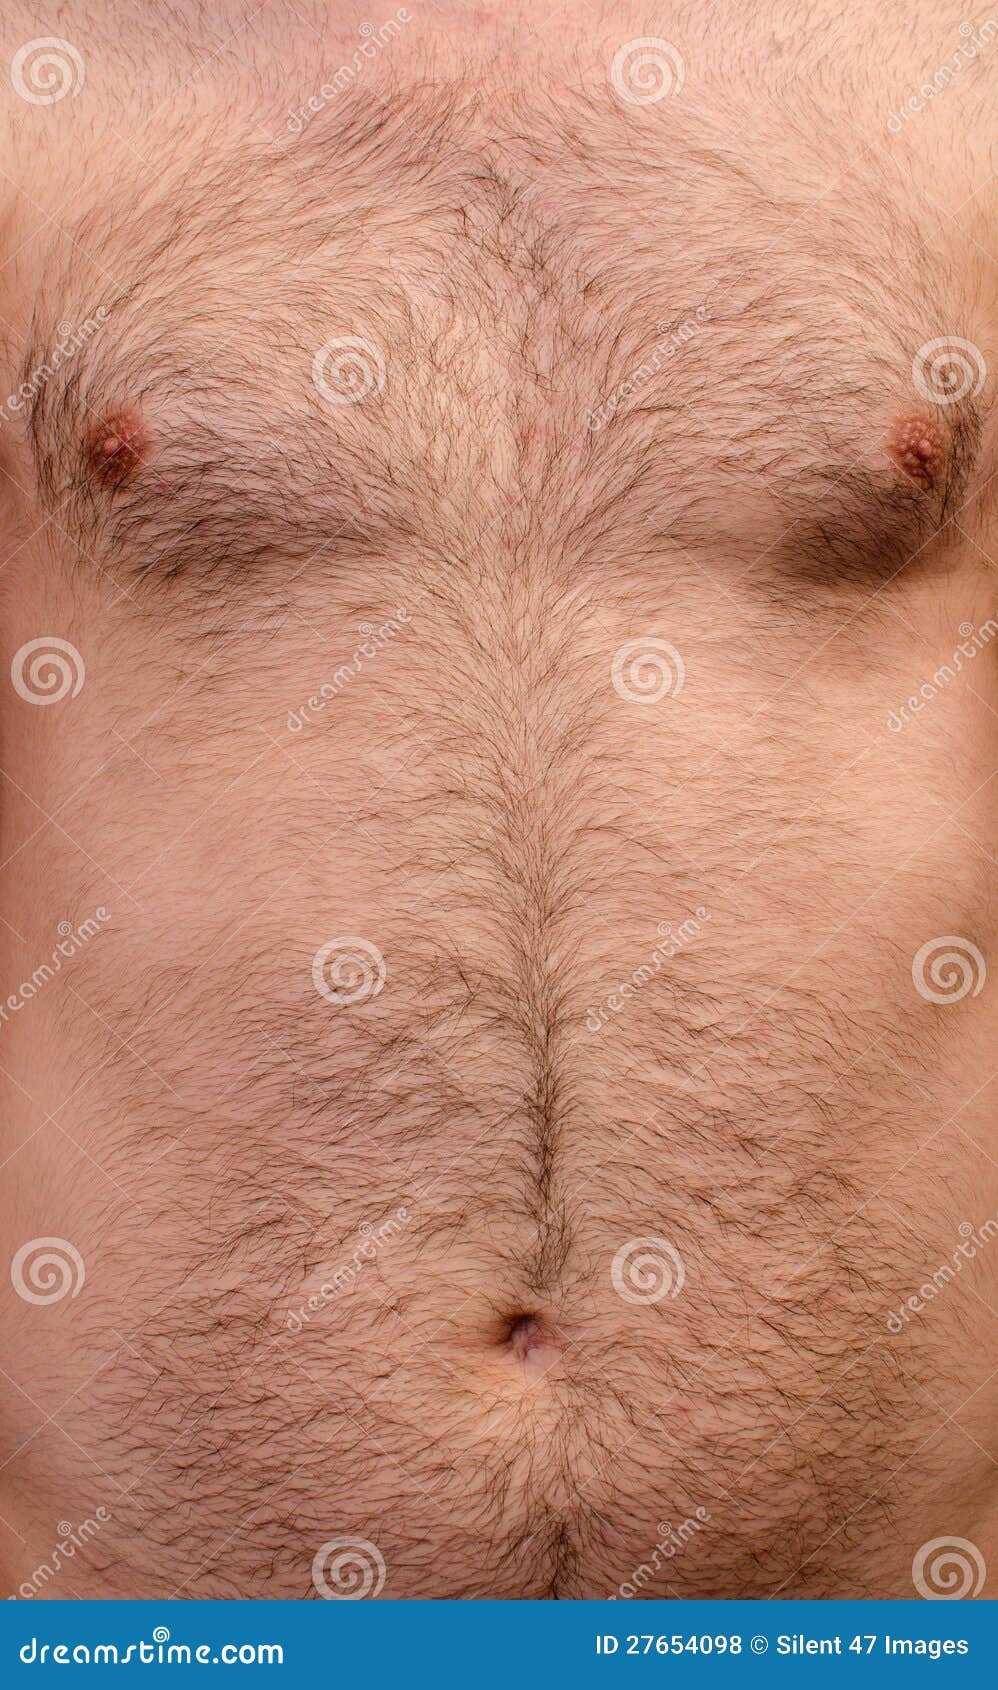 Hairy skin background stock photo. Image of skin, up - 27654098